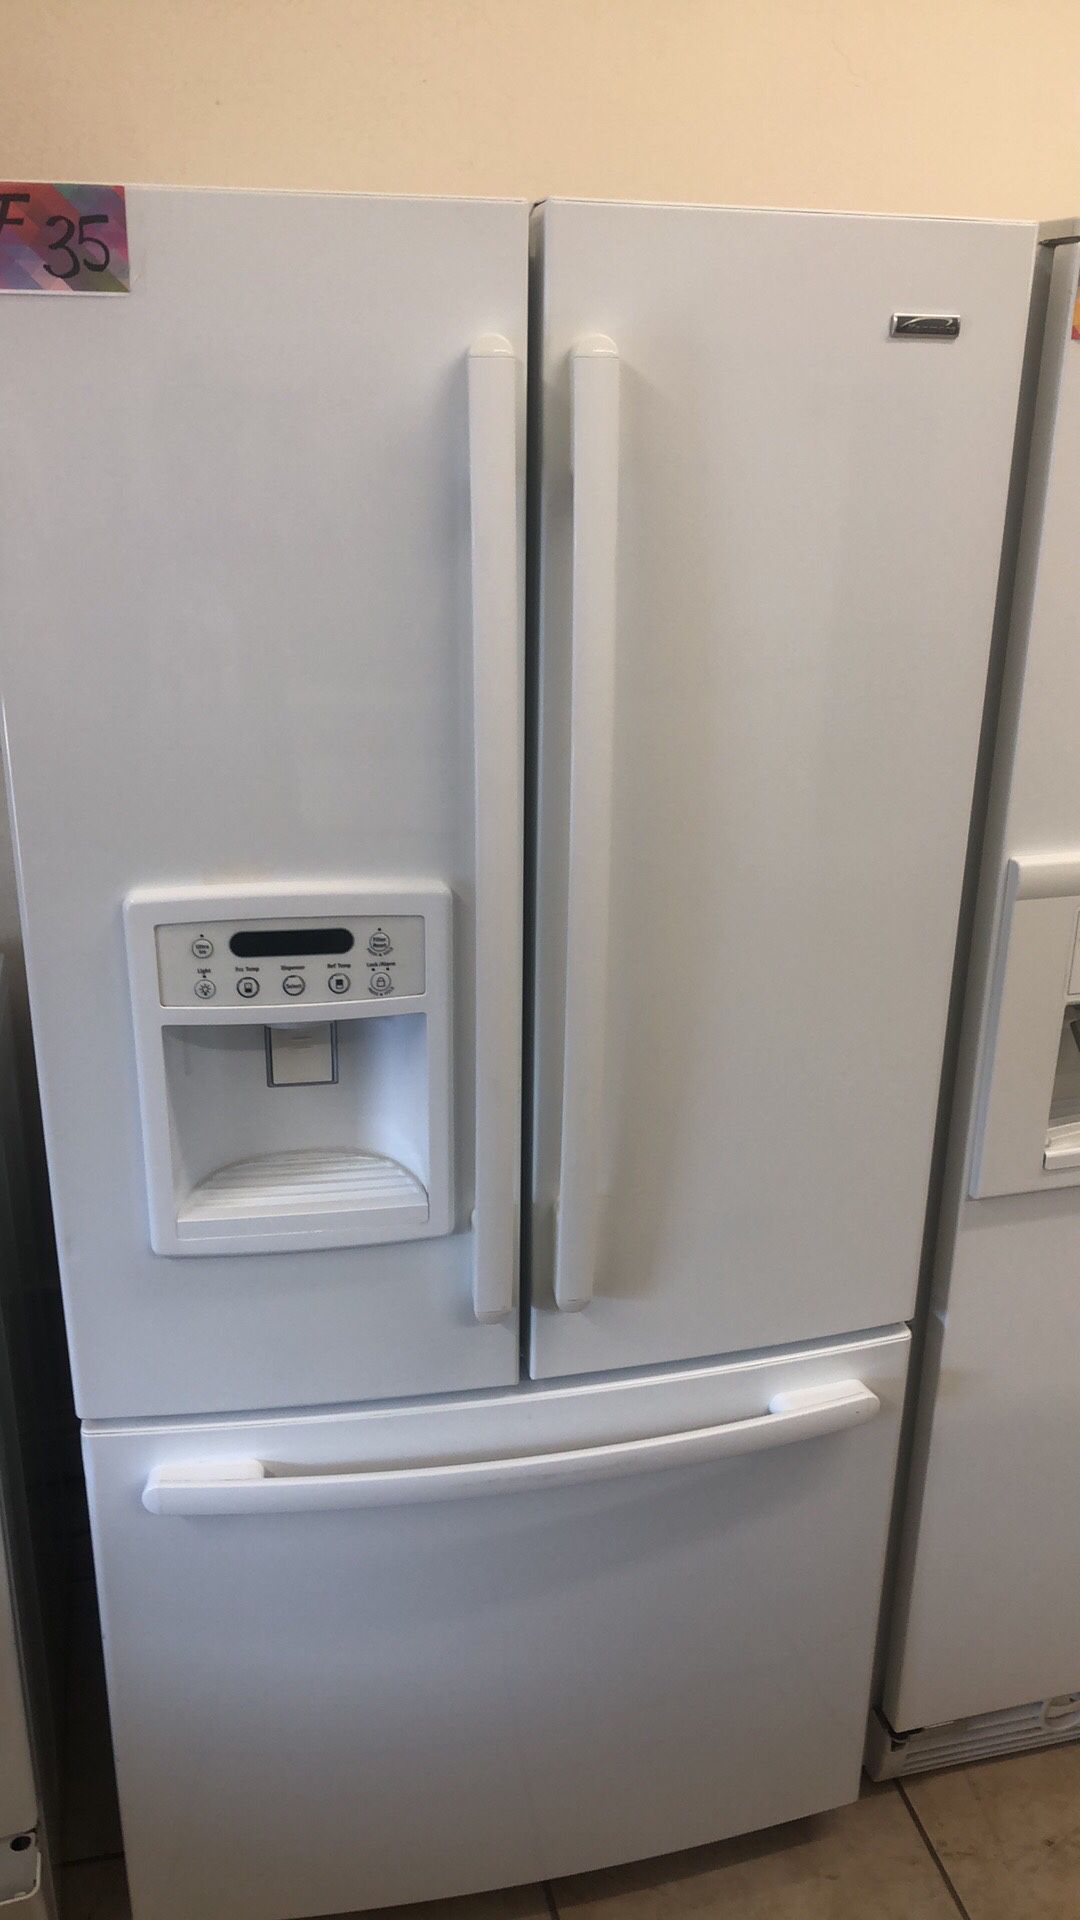 Refrigerator French door fridge 33 width